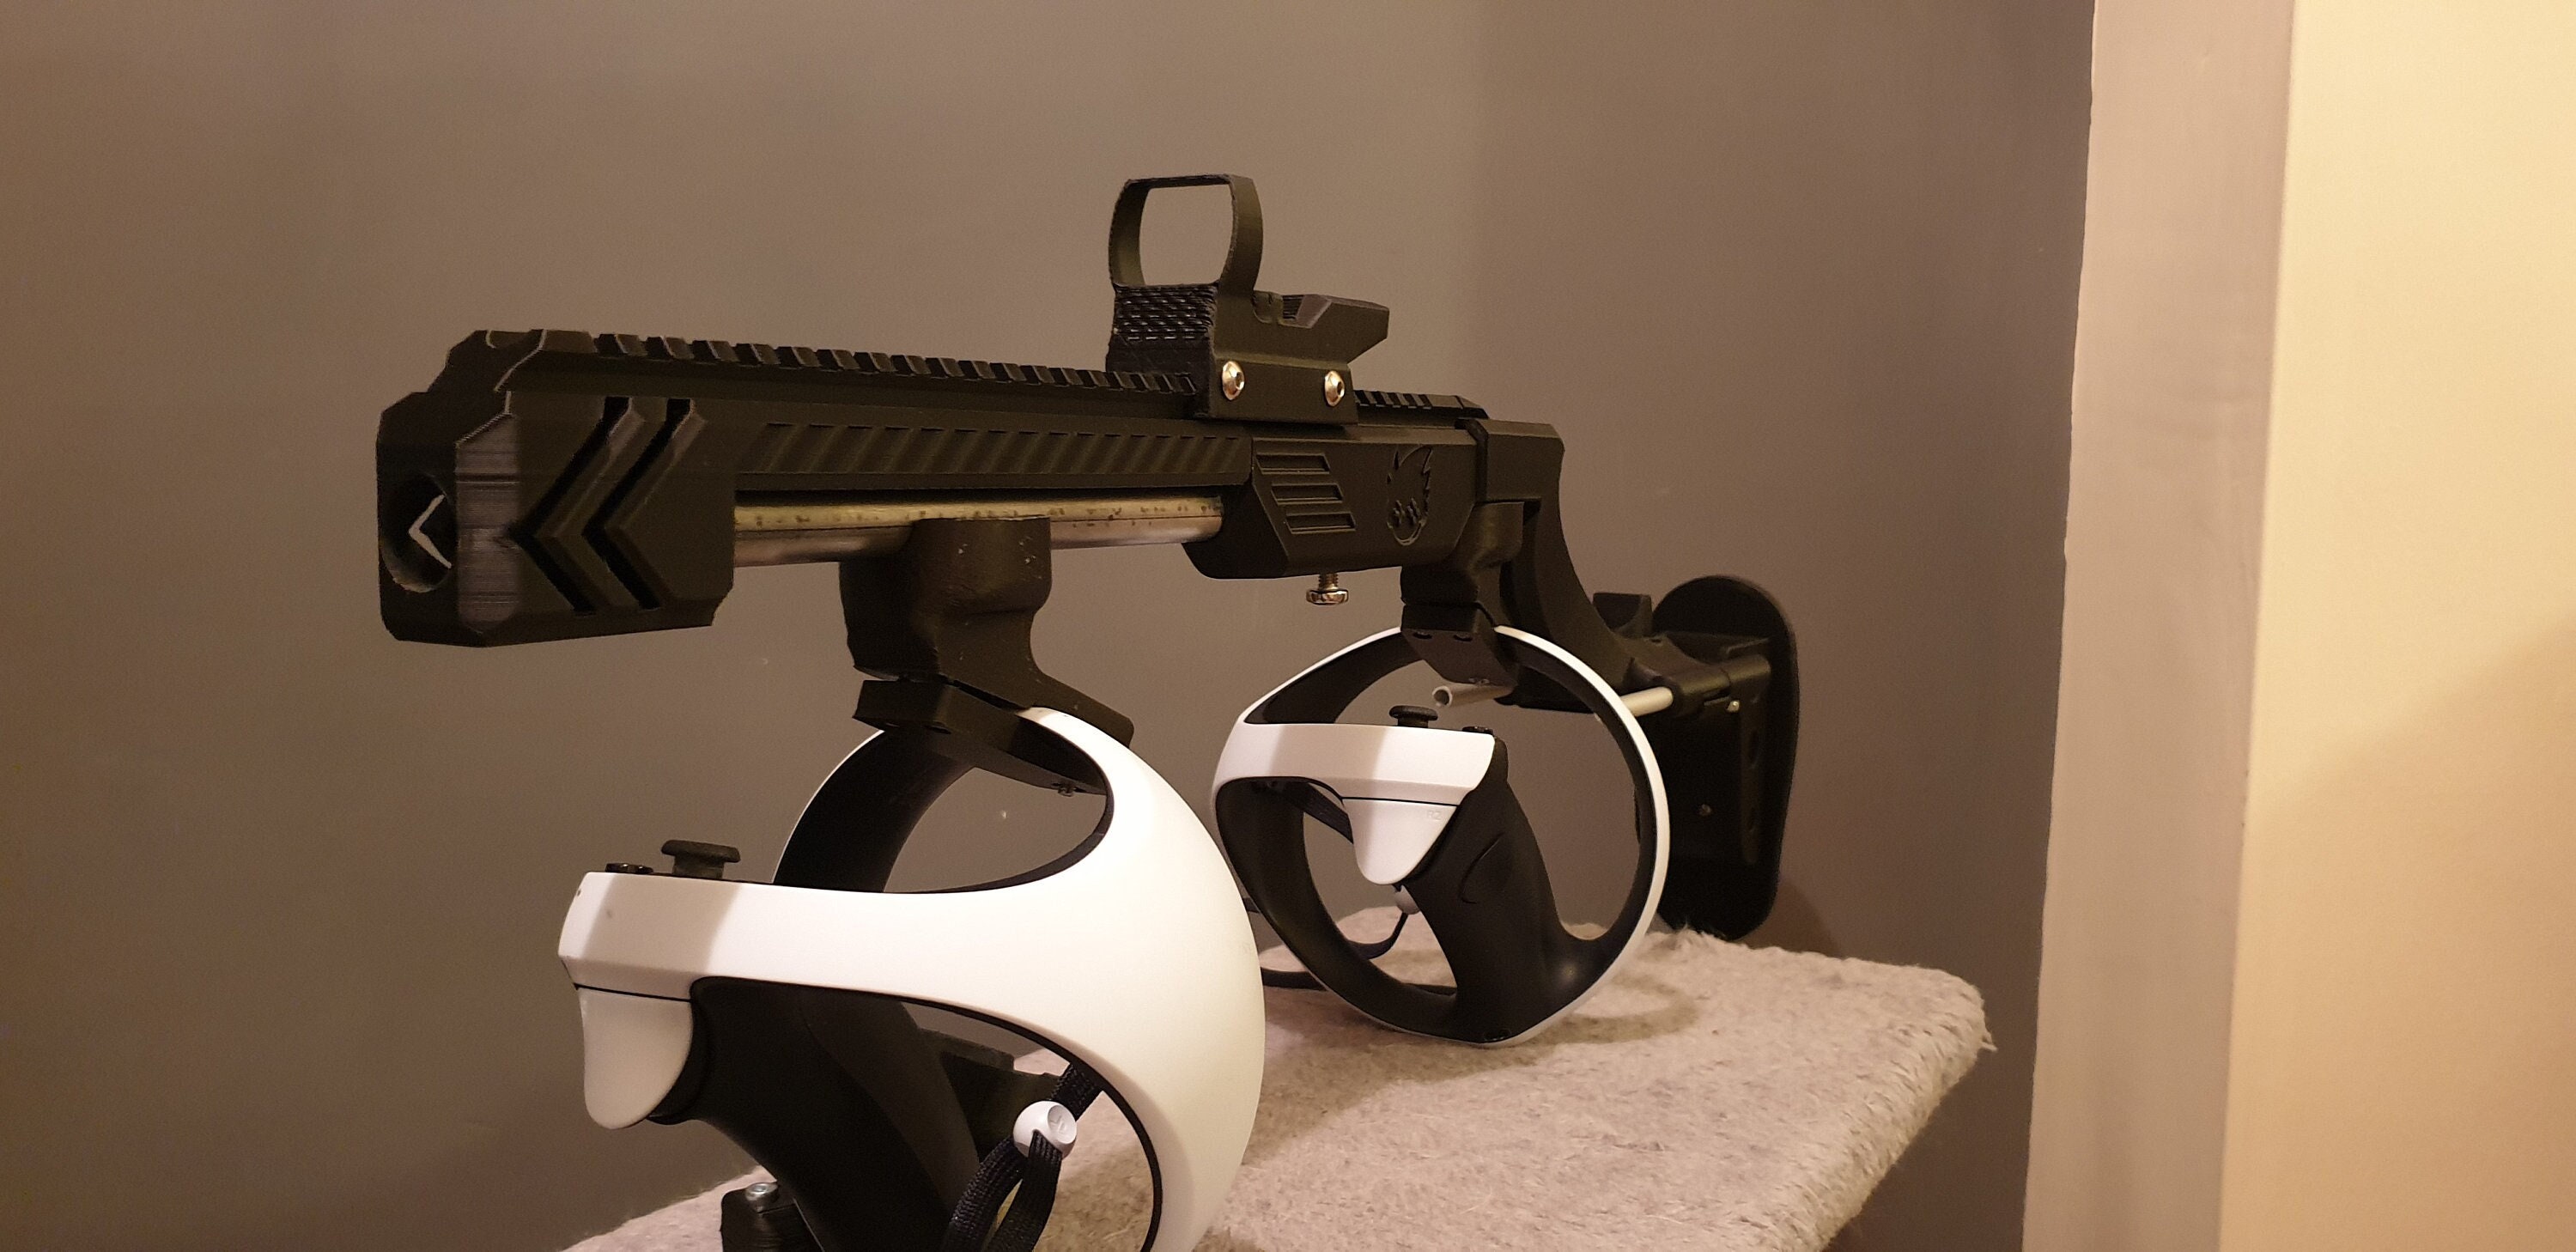 PSVR2 Game Gun Stock Caso Controlador VR, Pistol Grip, jogos FPS